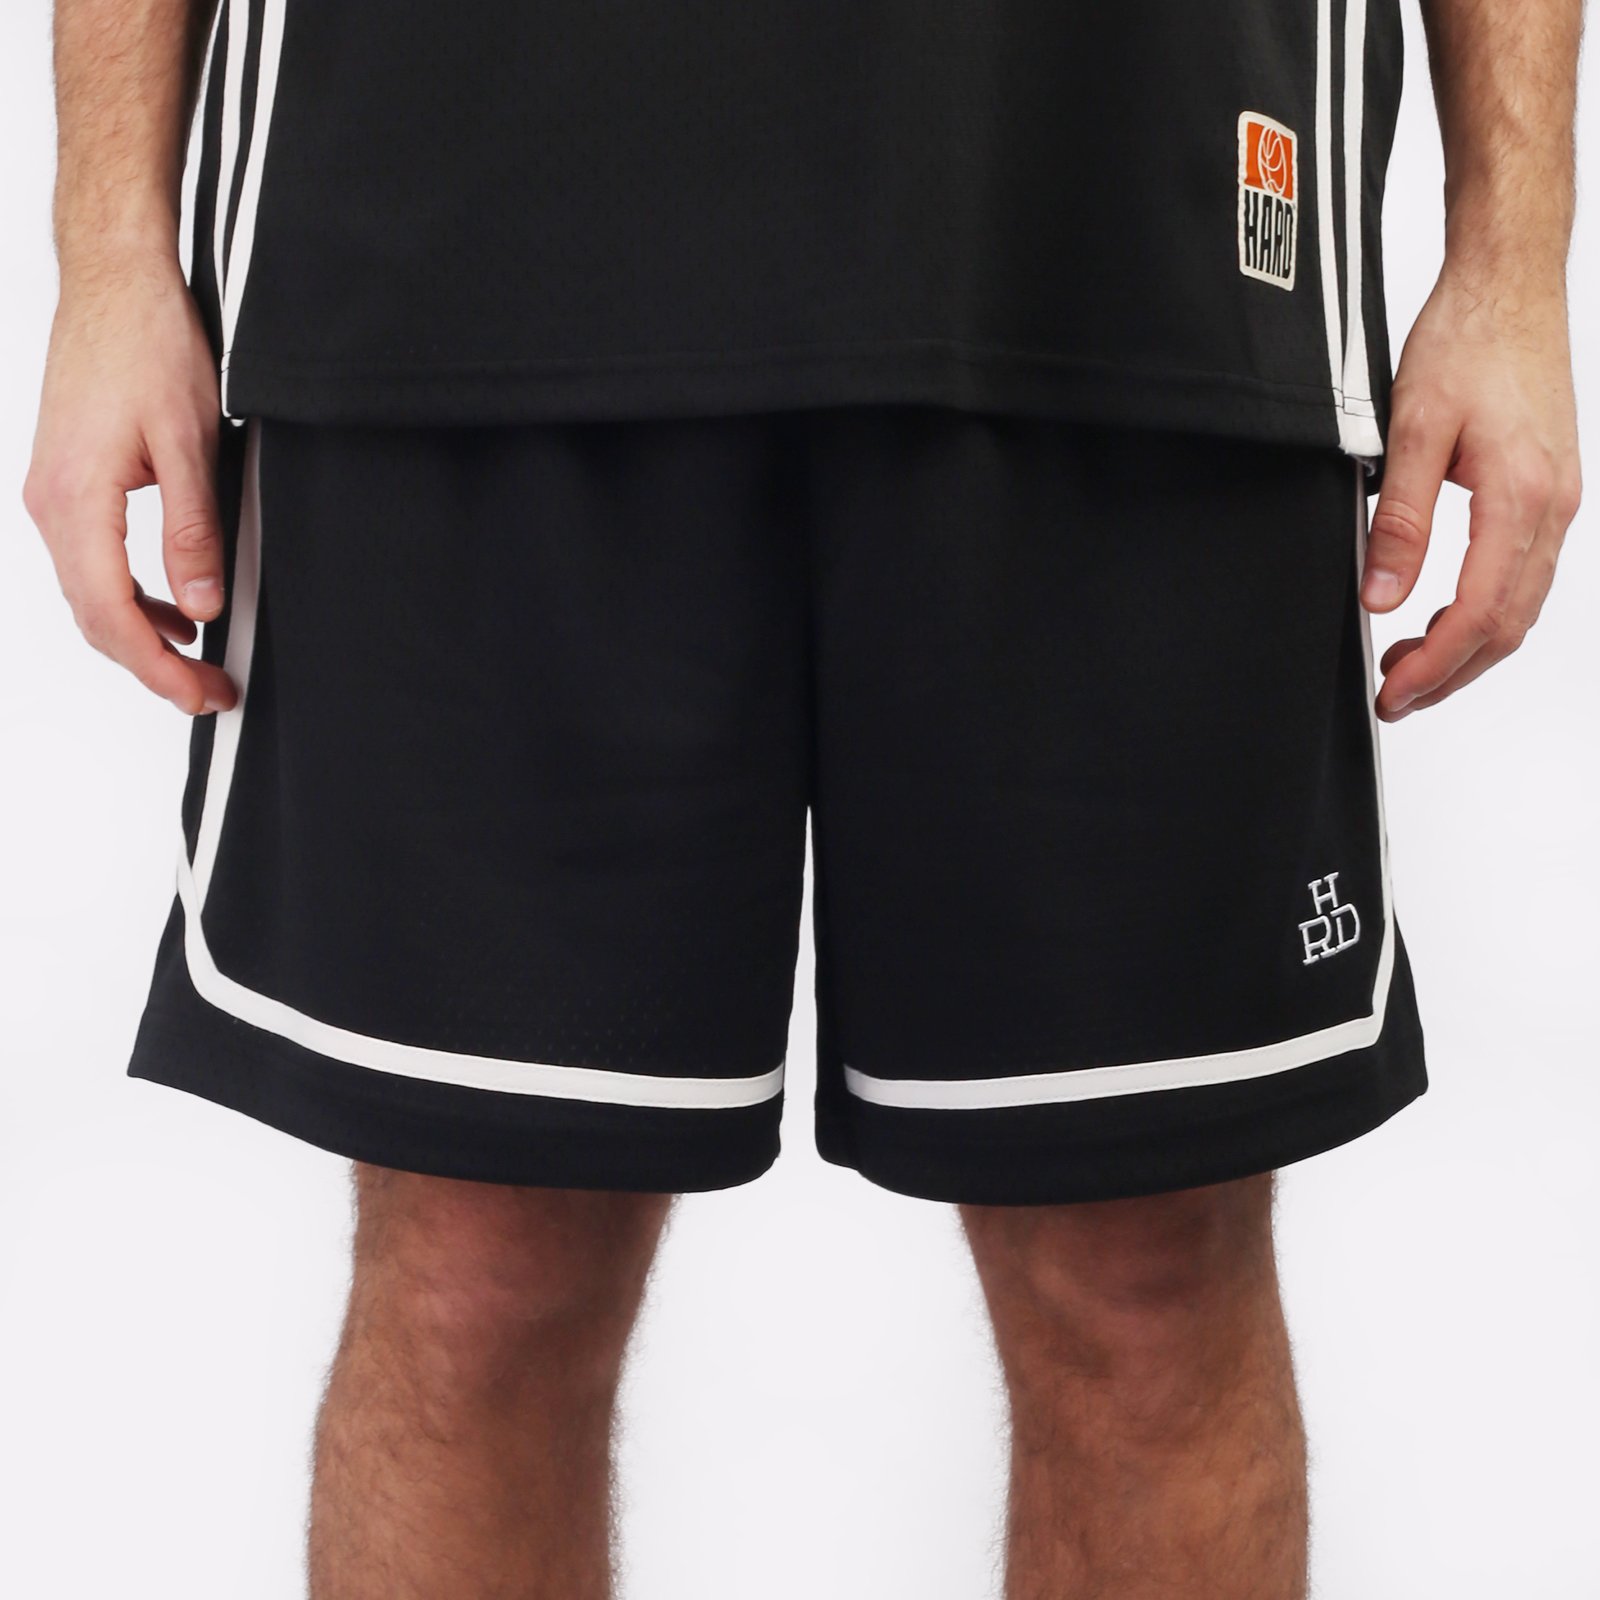 мужские черные шорты Hard Teammate Teammate short-blk/wht - цена, описание, фото 1